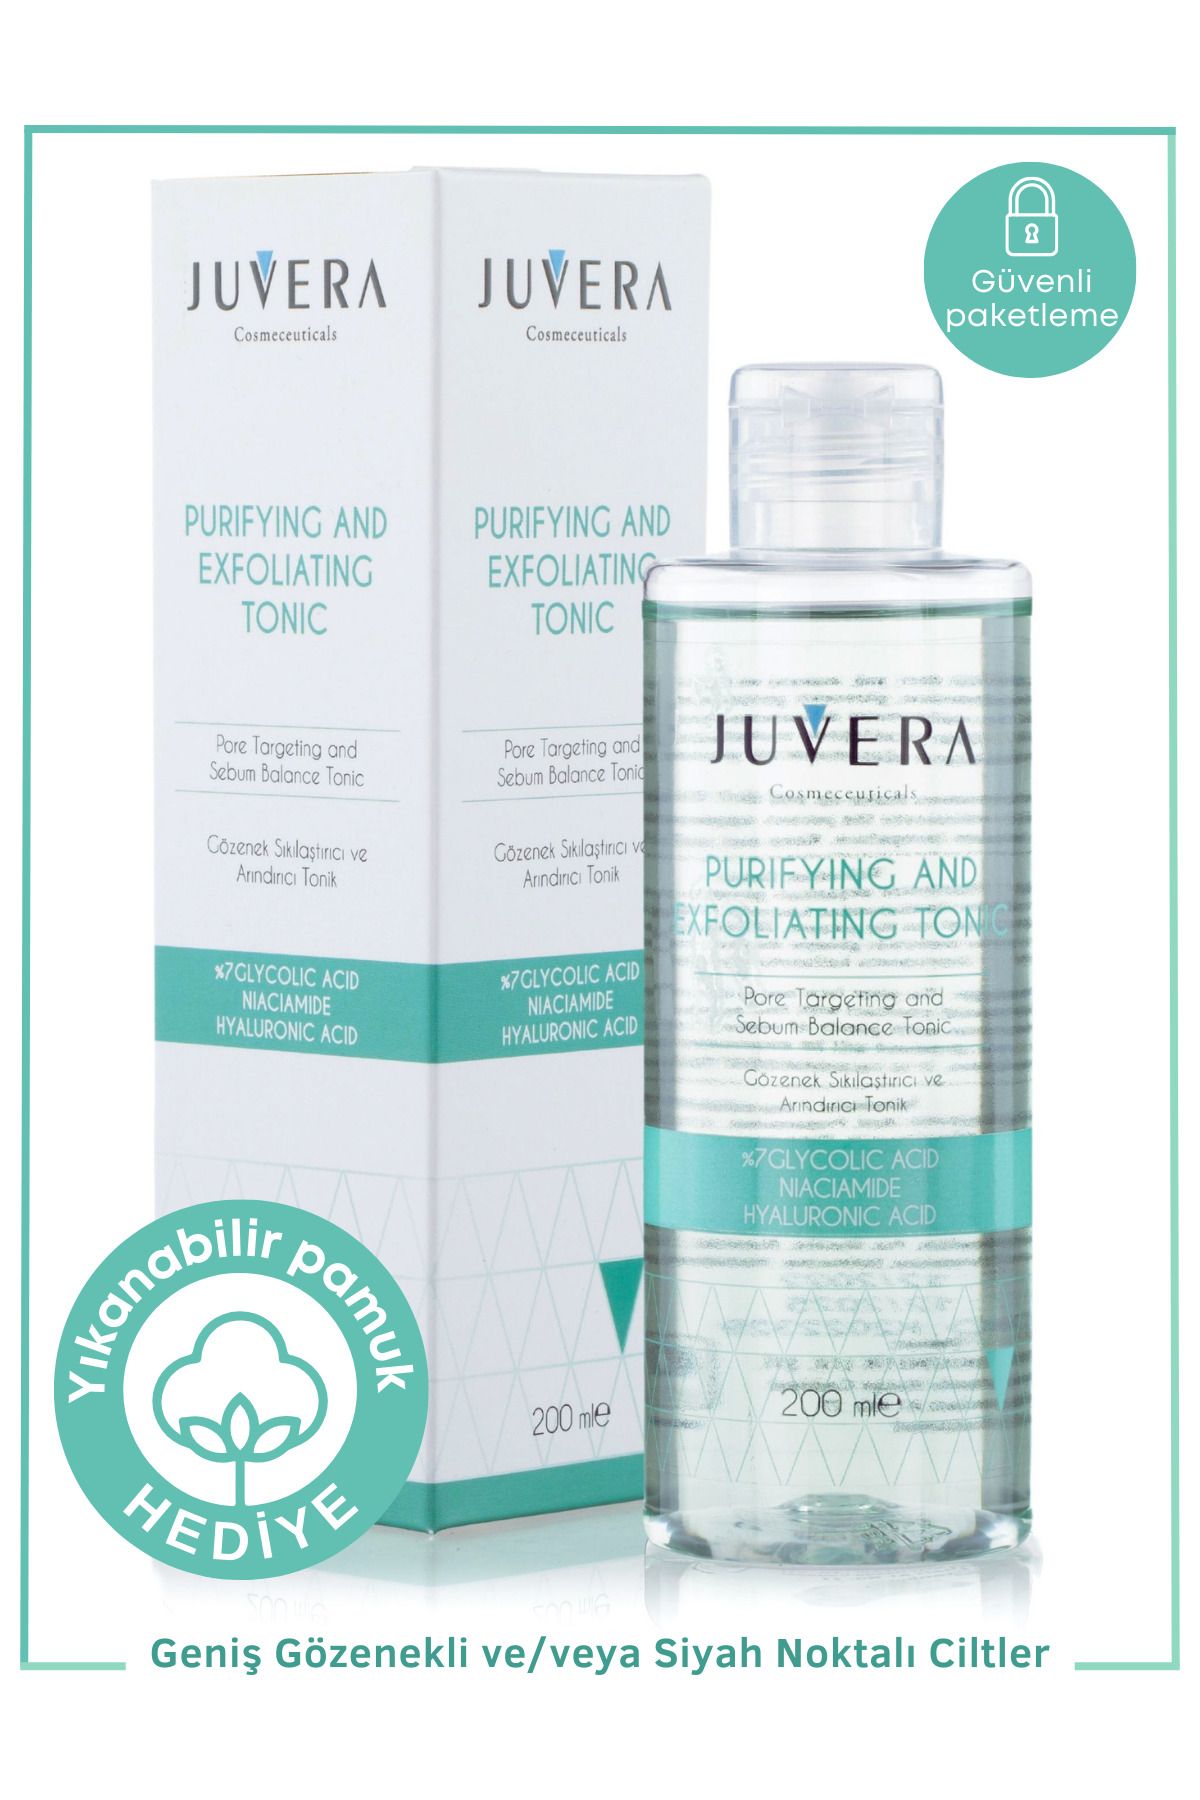 JUVERA Cosmeceuticals Gözenek Sıkılaştırıcı Ve Arındırıcı Tonik - Purifying And Exfoliating Tonic 200ml